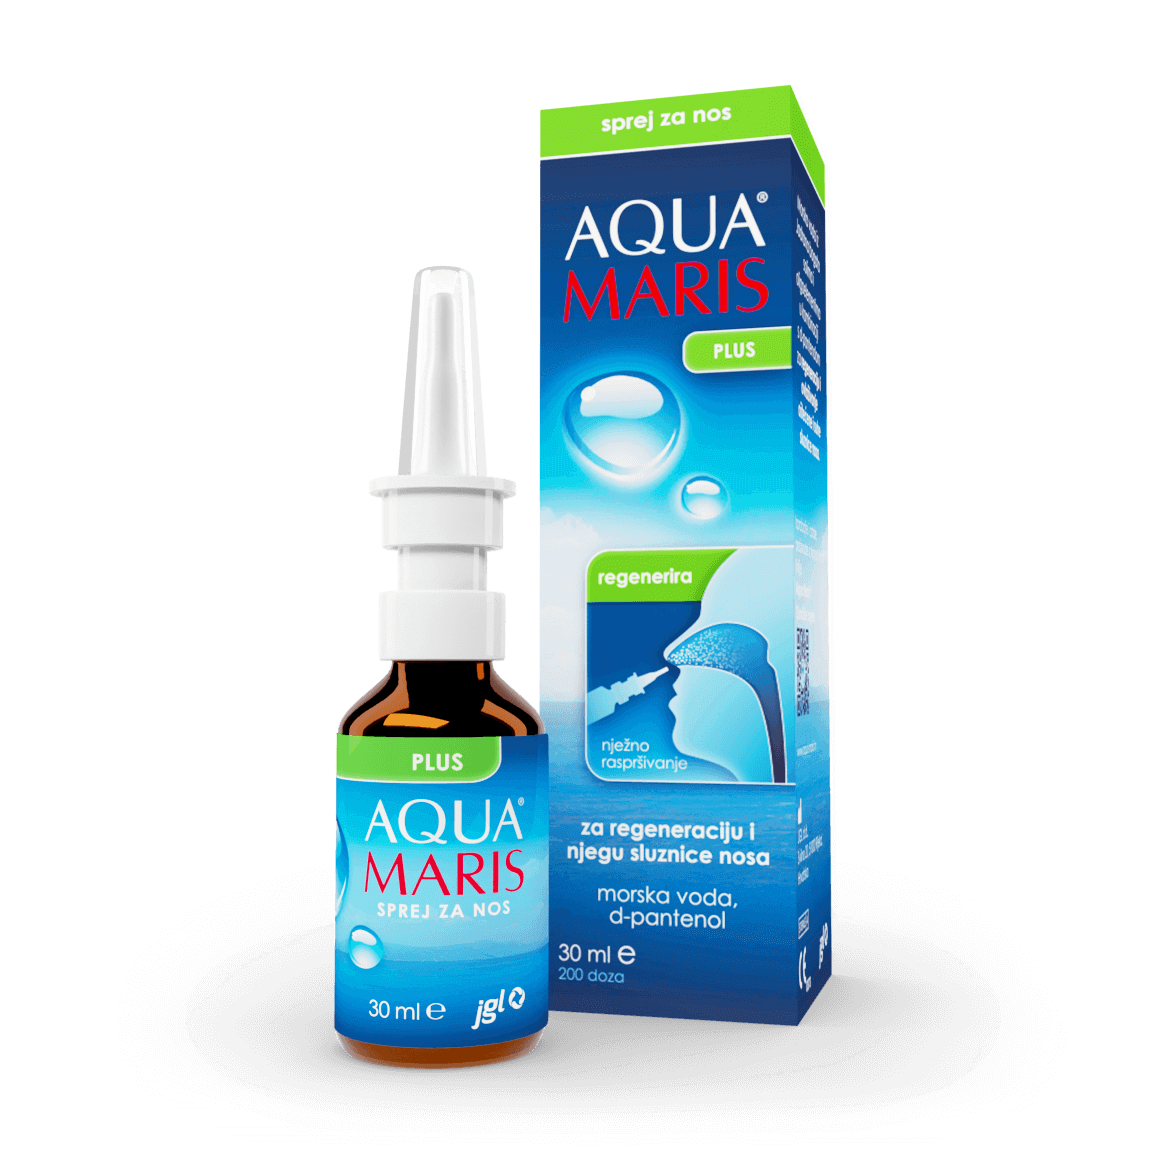 Aqua Maris Plus